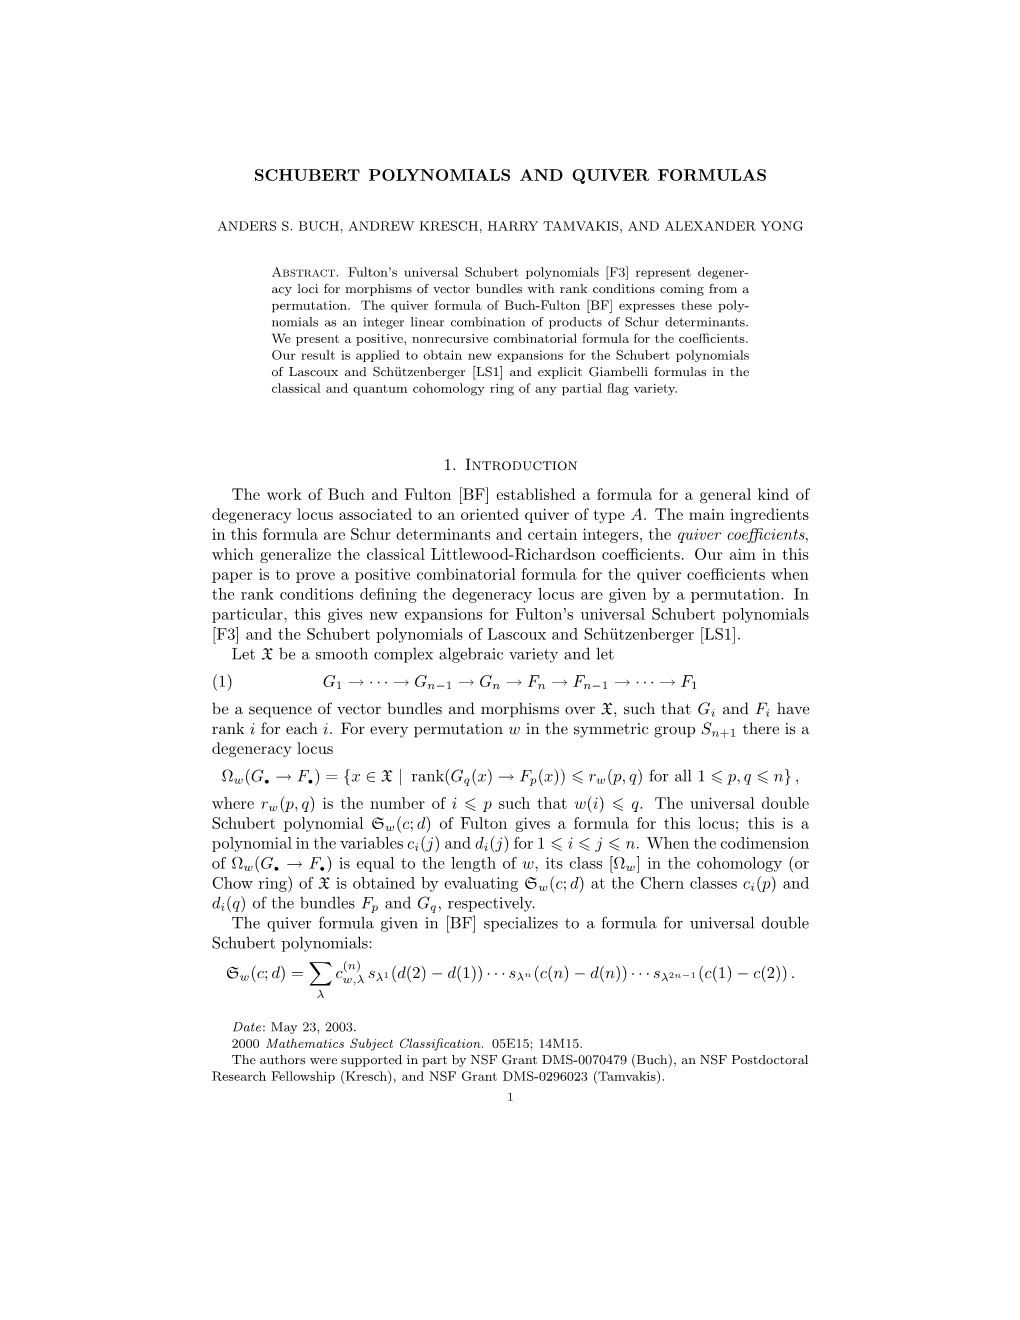 Schubert Polynomials and Quiver Formulas 11